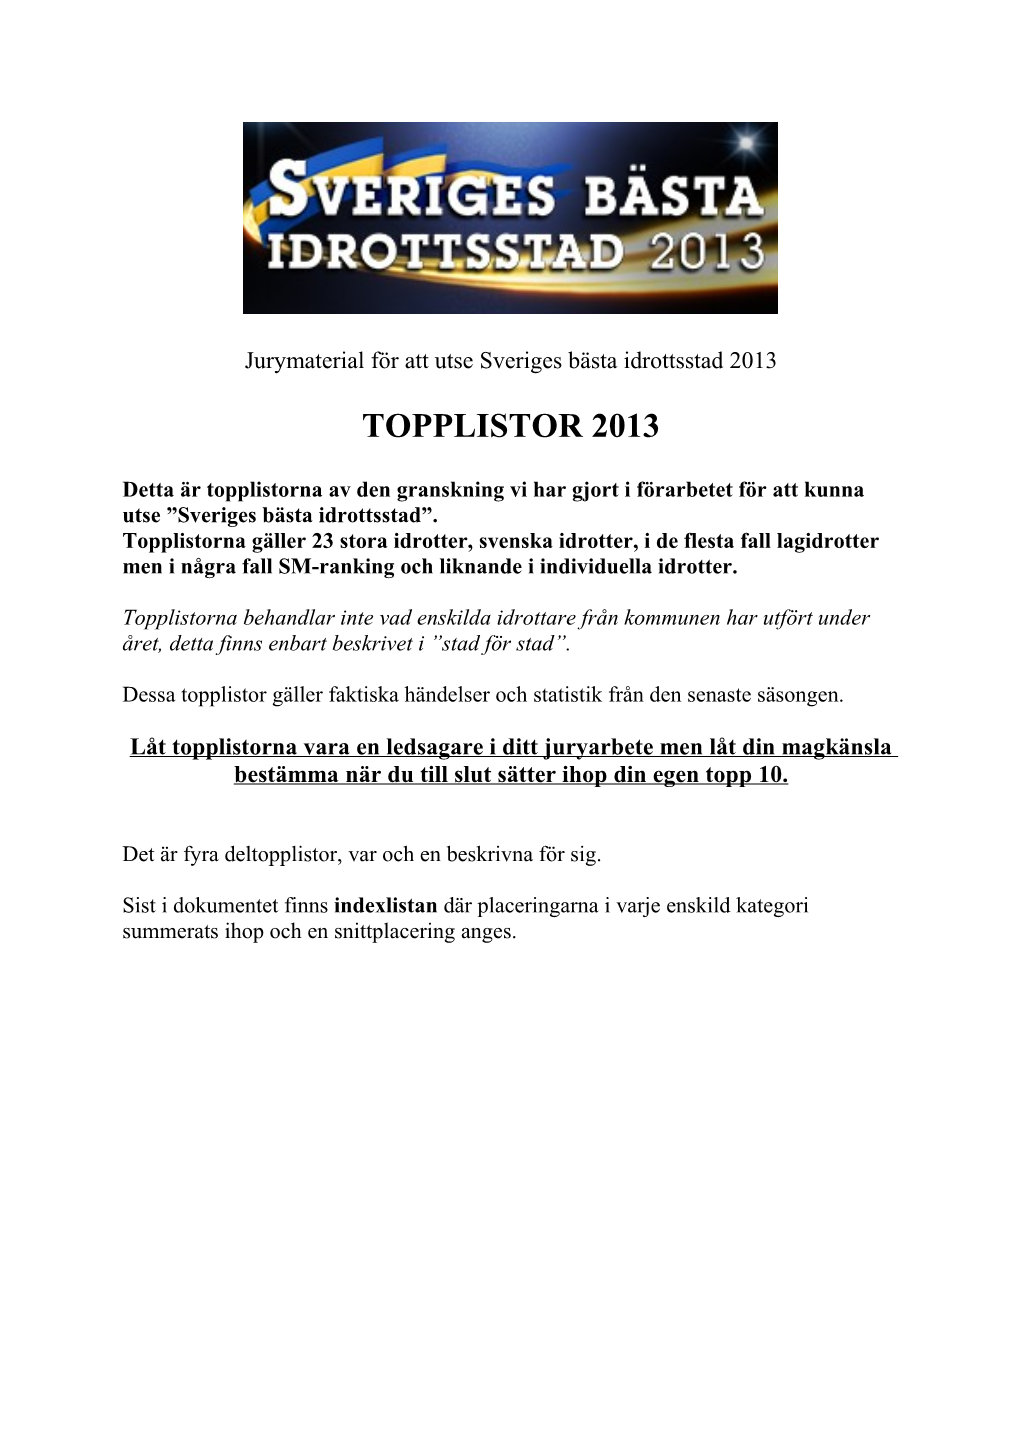 Topplistor 2013